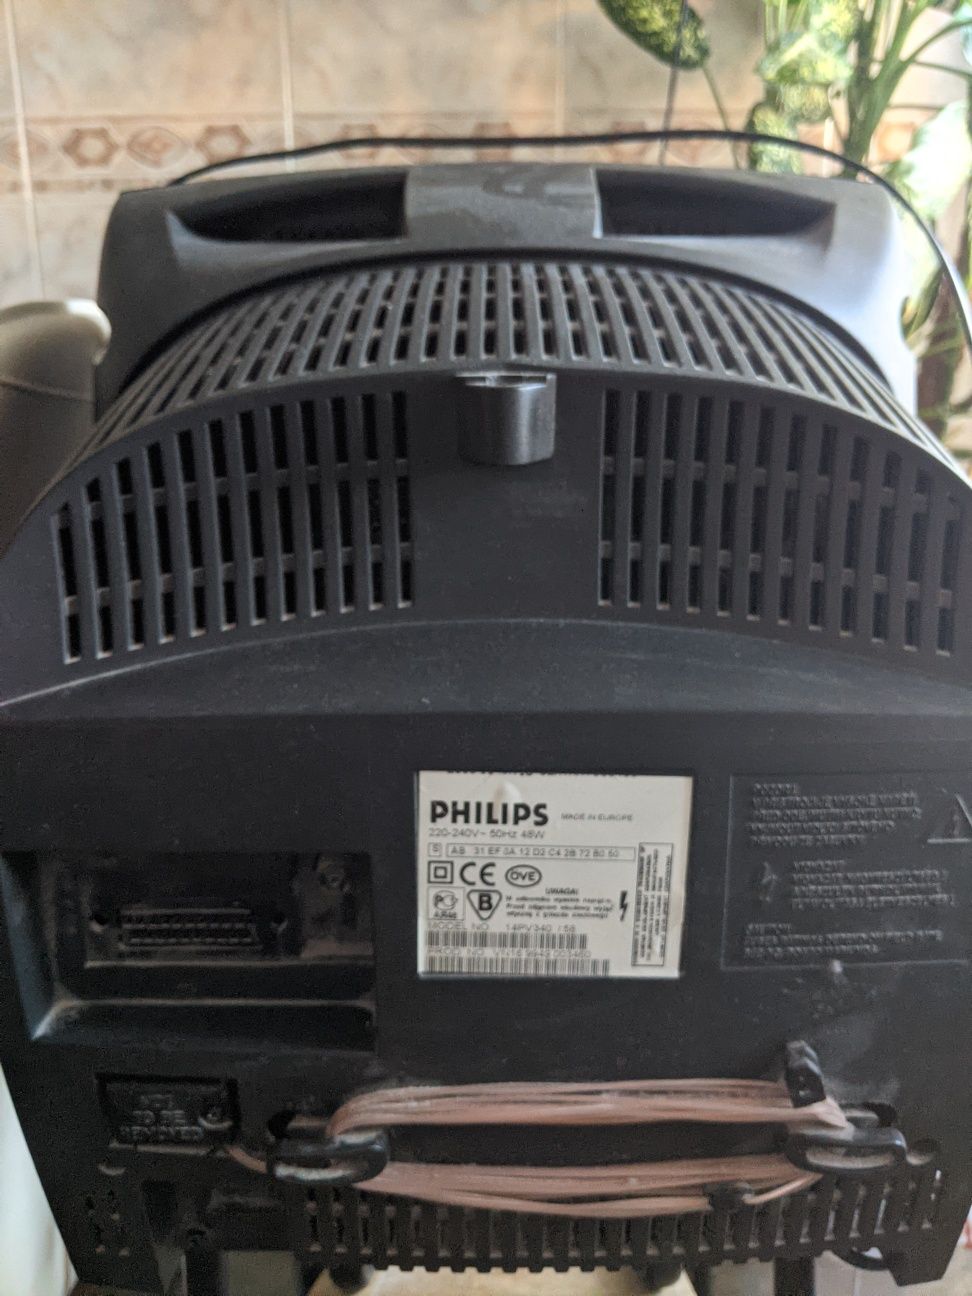 Телевизор 14" Philips с FM-радио, часами и будильником